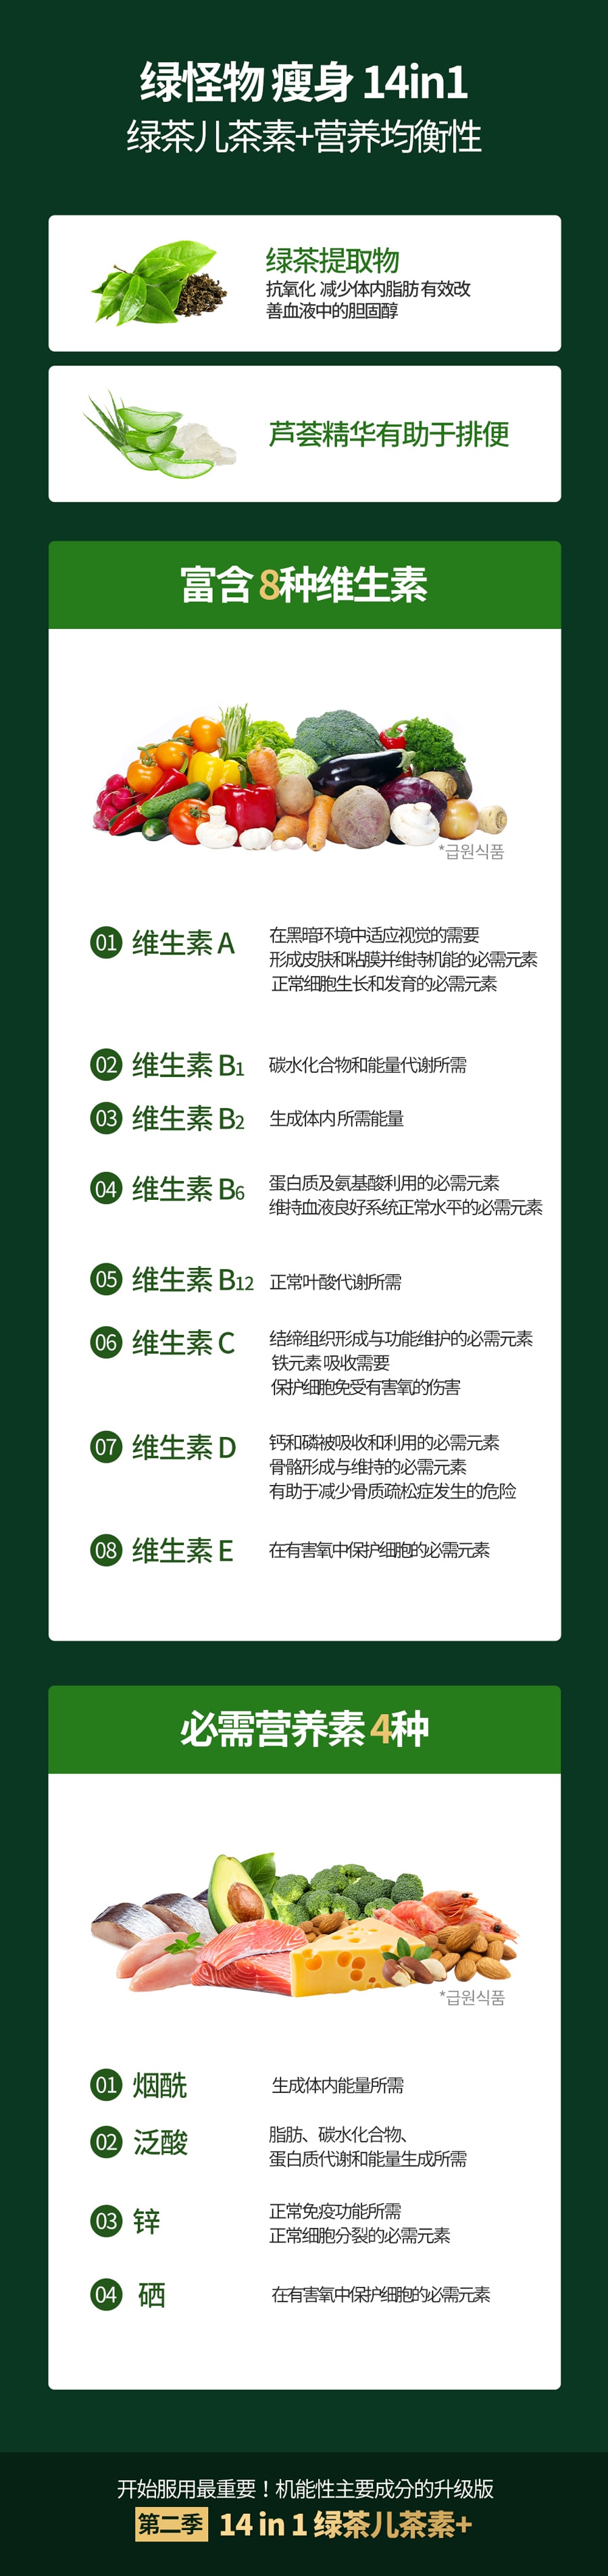 韩国 [Green Monster] 绿色瘦身14in1 绿茶儿茶素 减肥瘦身通便辅助剂 56粒